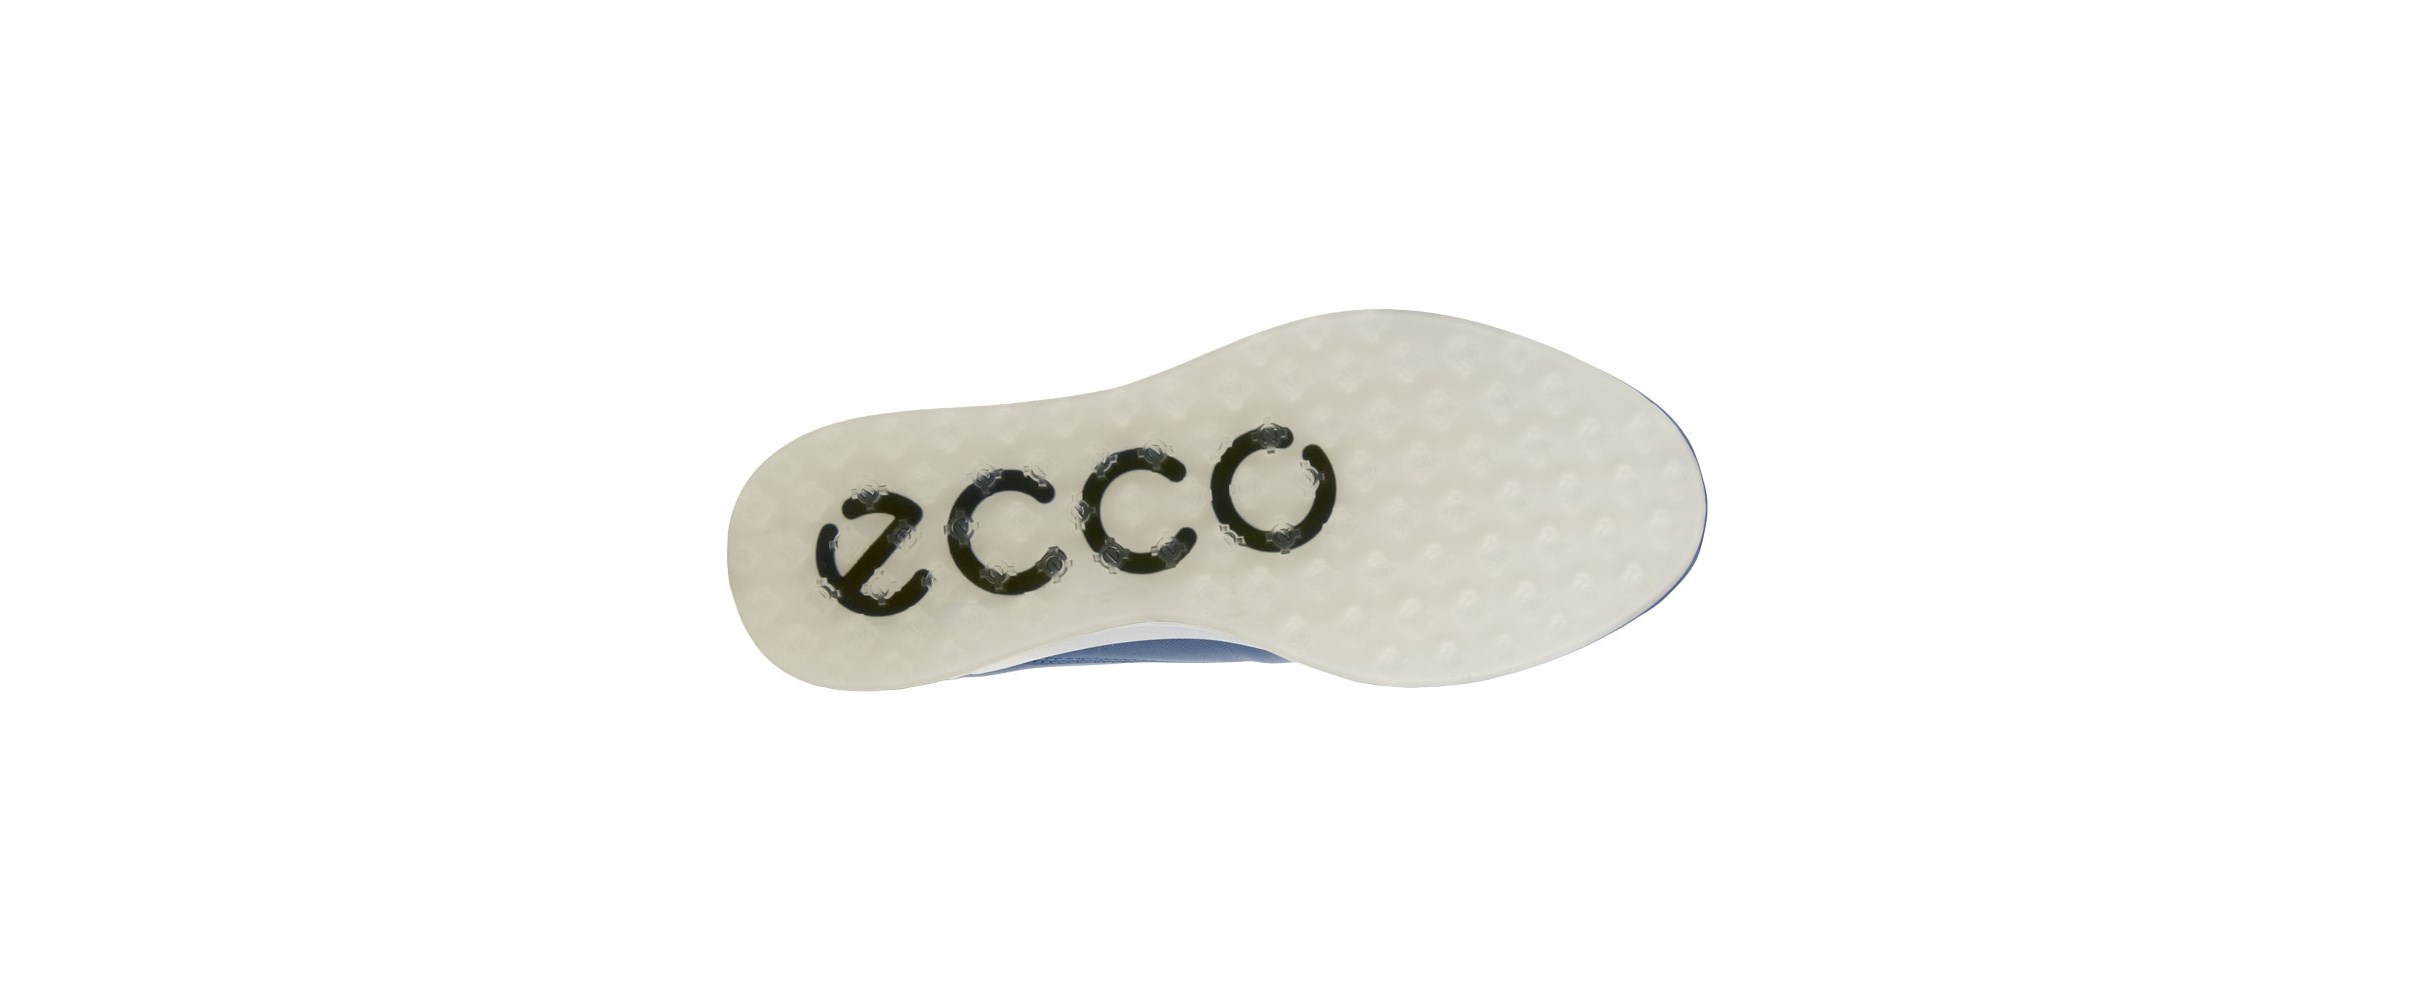 ECCO M GOLF S-THREE pánské golfové boty RETRO BLUE/WHITE/MARINE, velikost 41, 42, 43, 44, 45 - zvìtšit obrázek